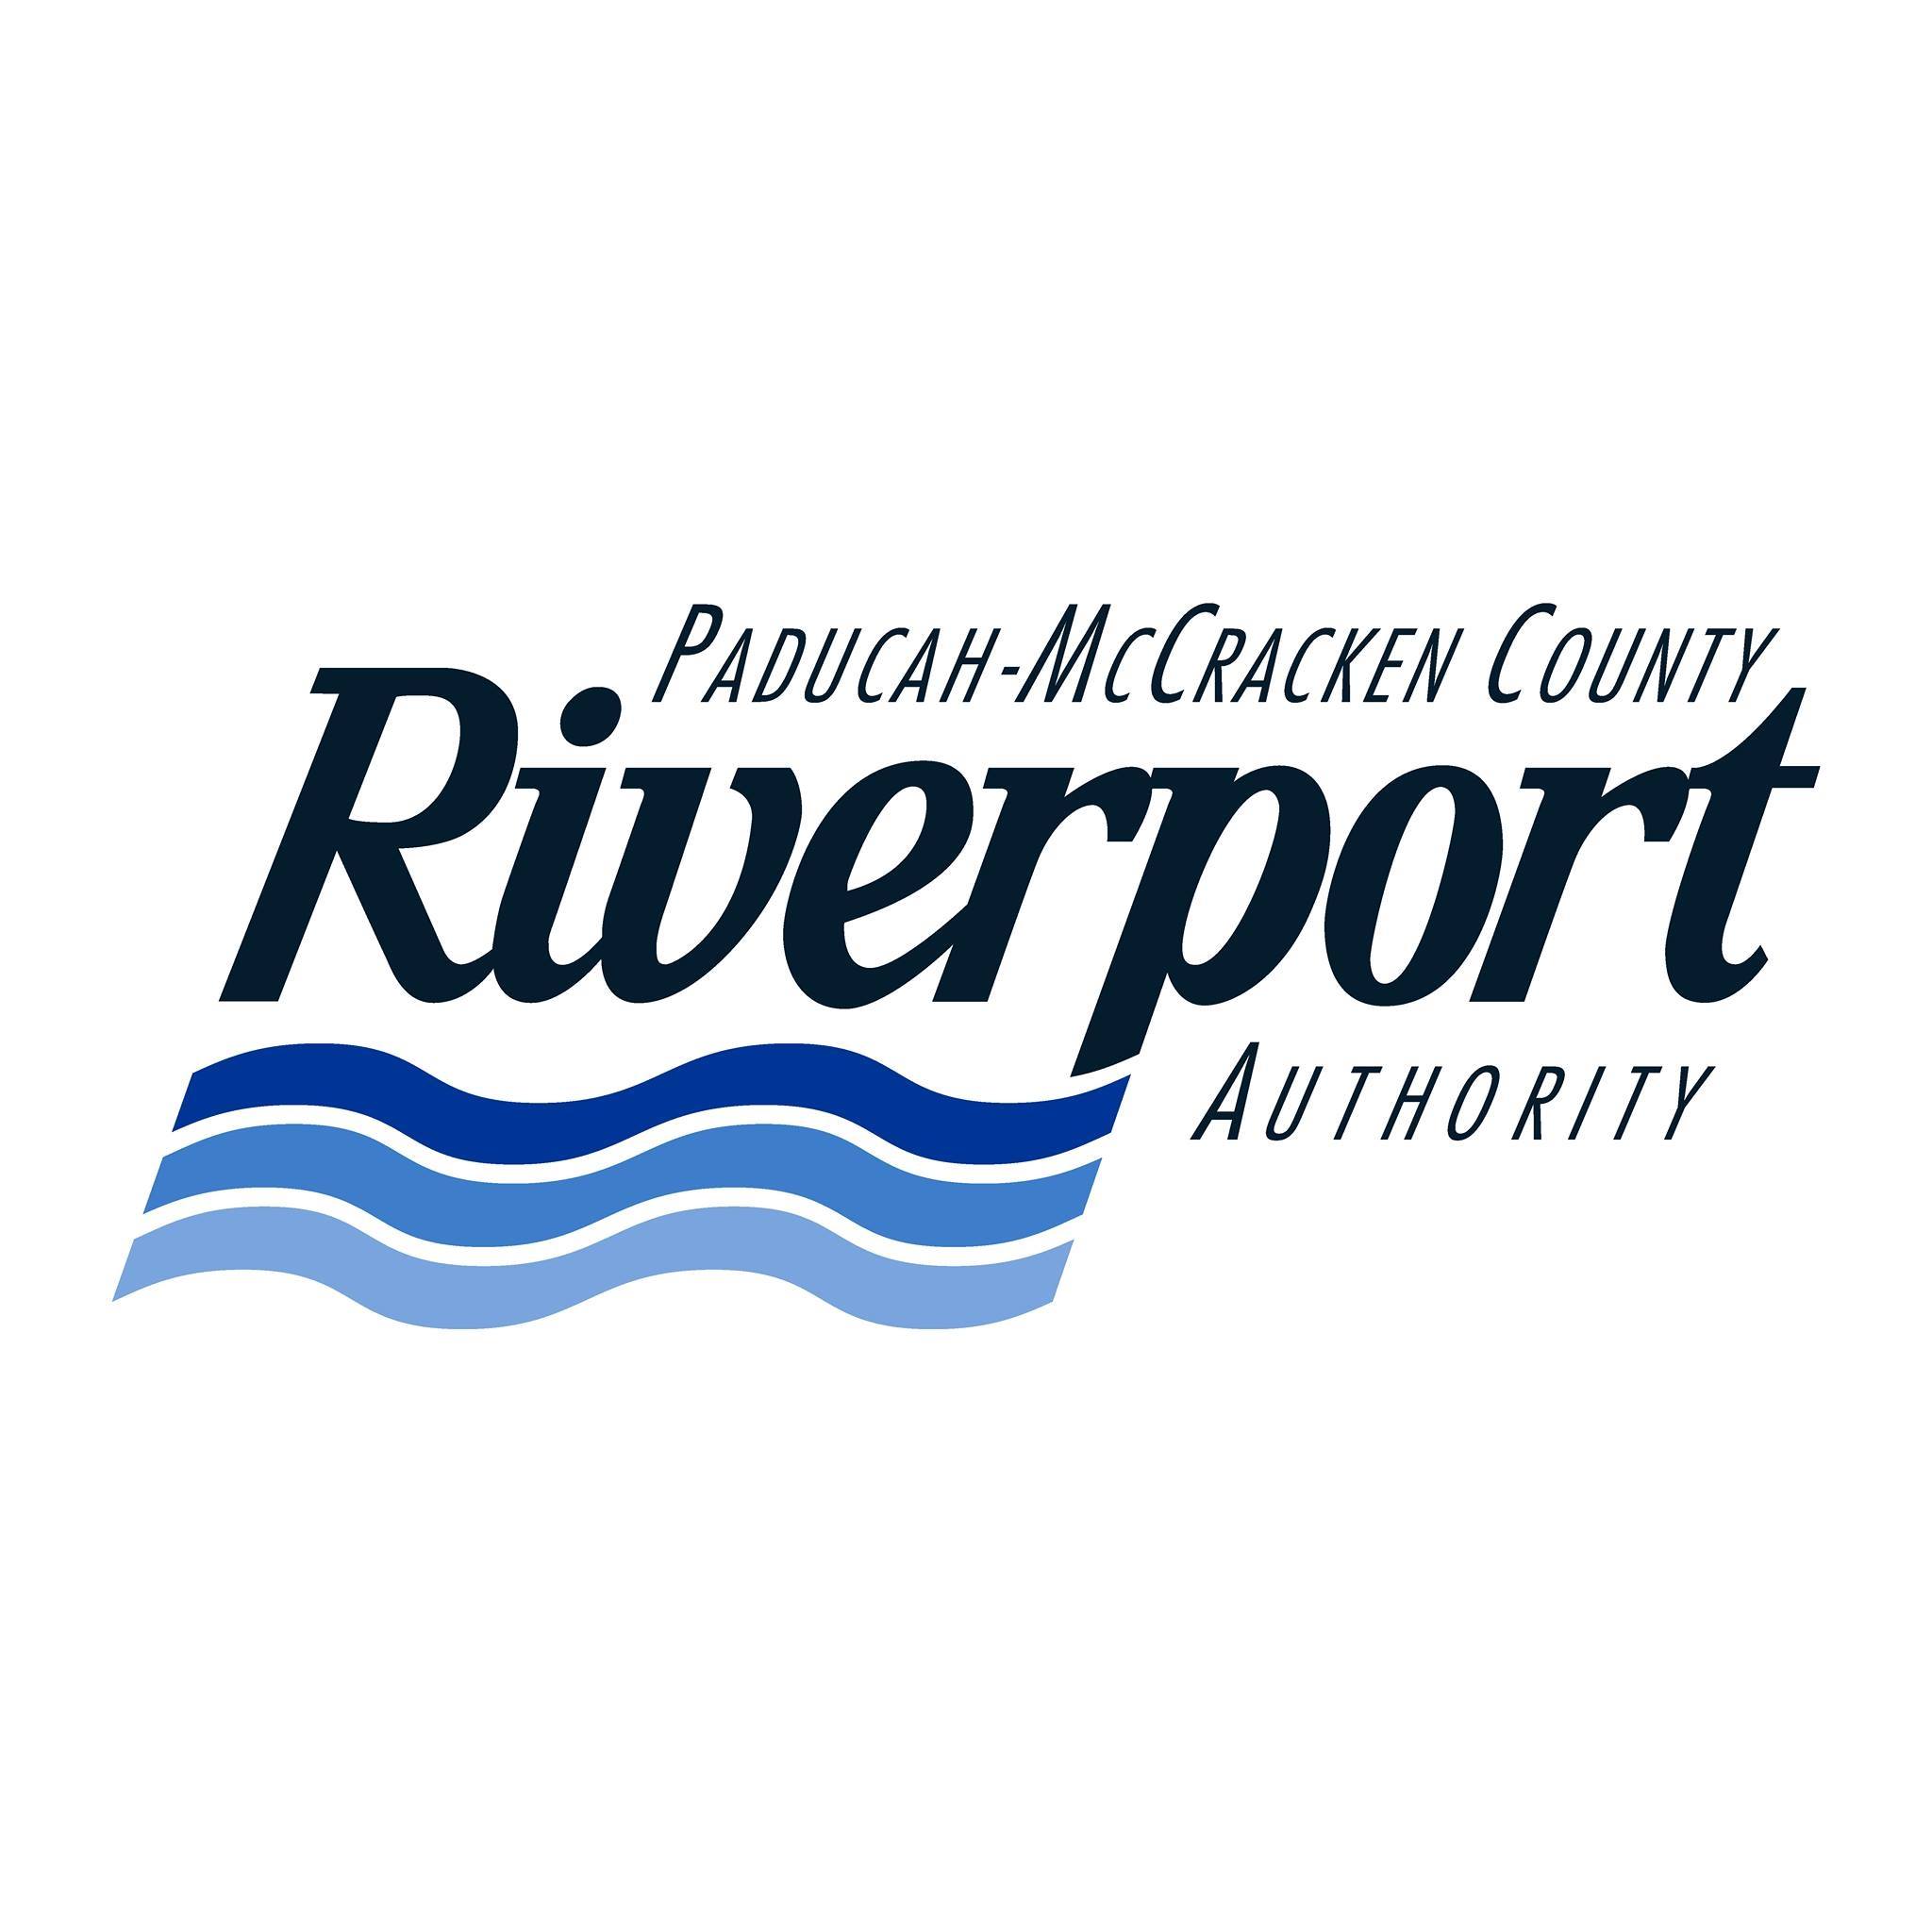 Paducah-McCracken County Riverport Authority